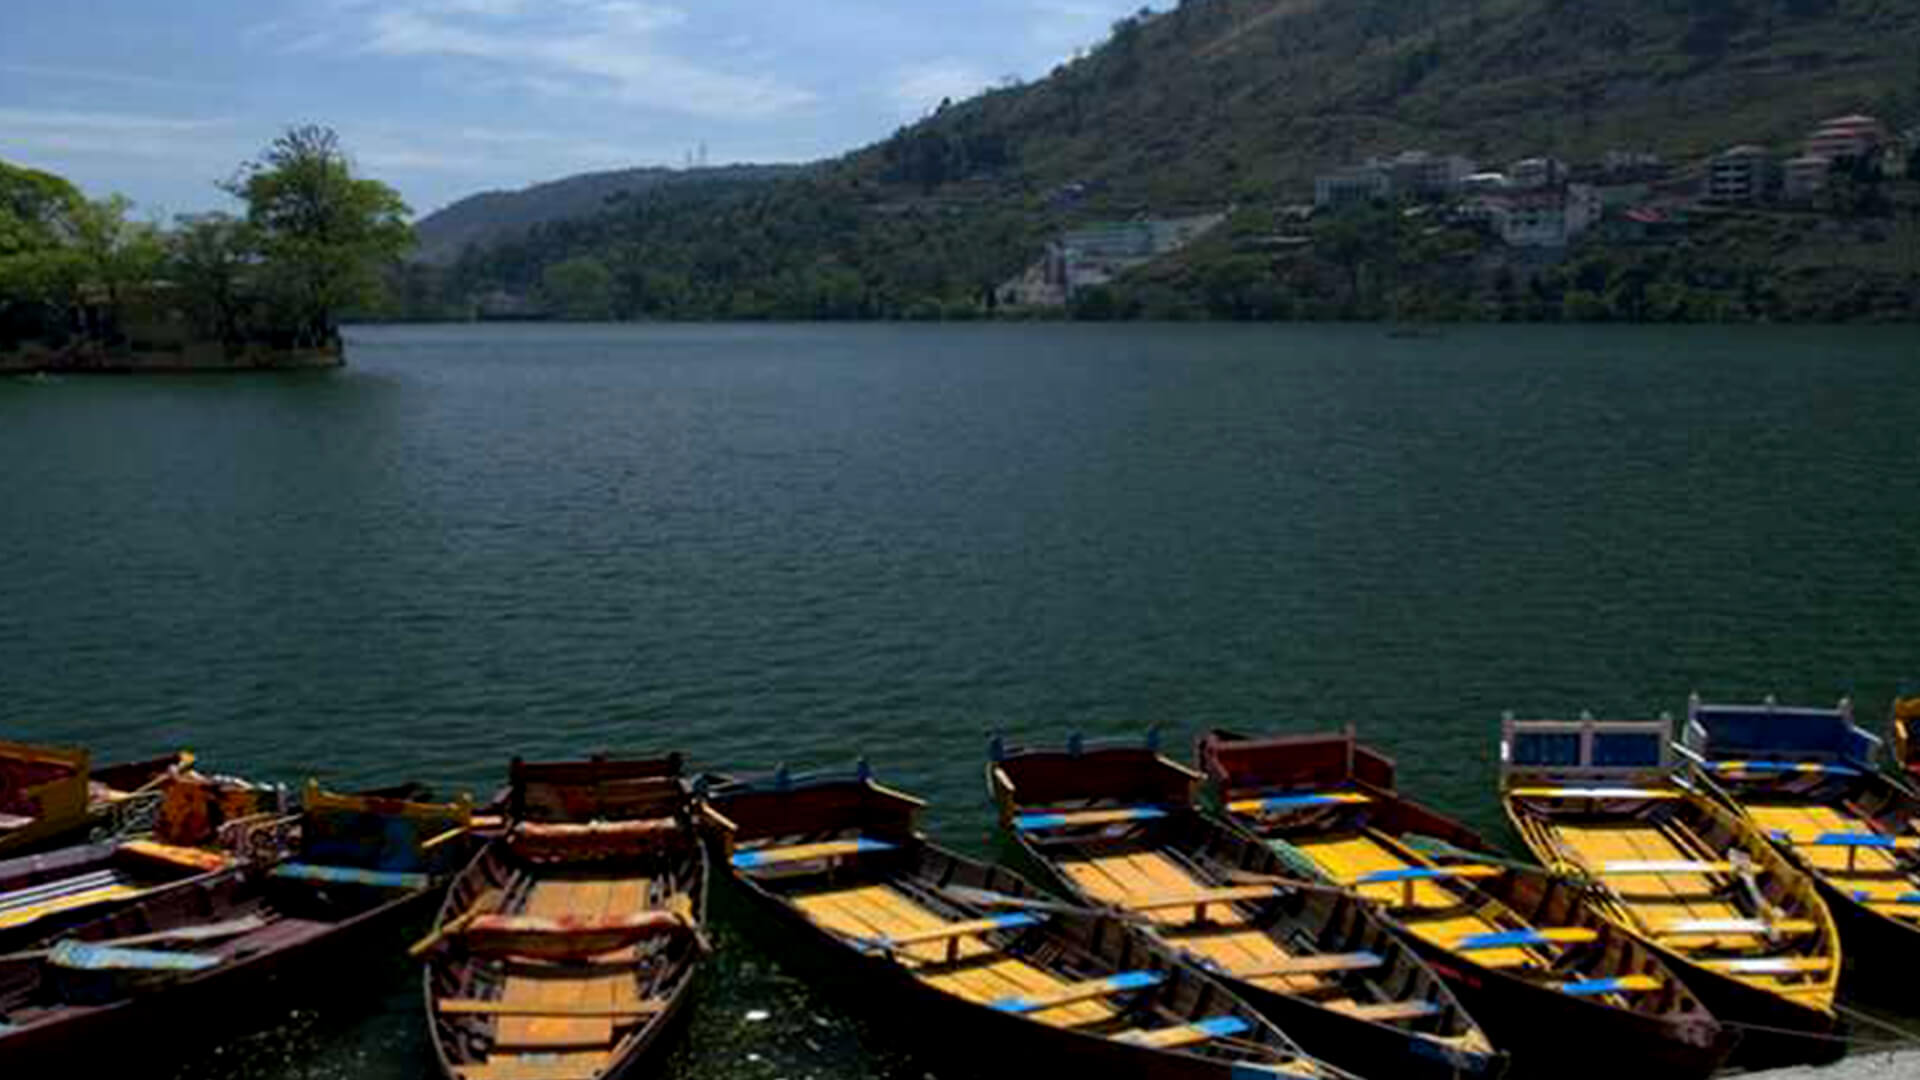 Bhimtal Lake